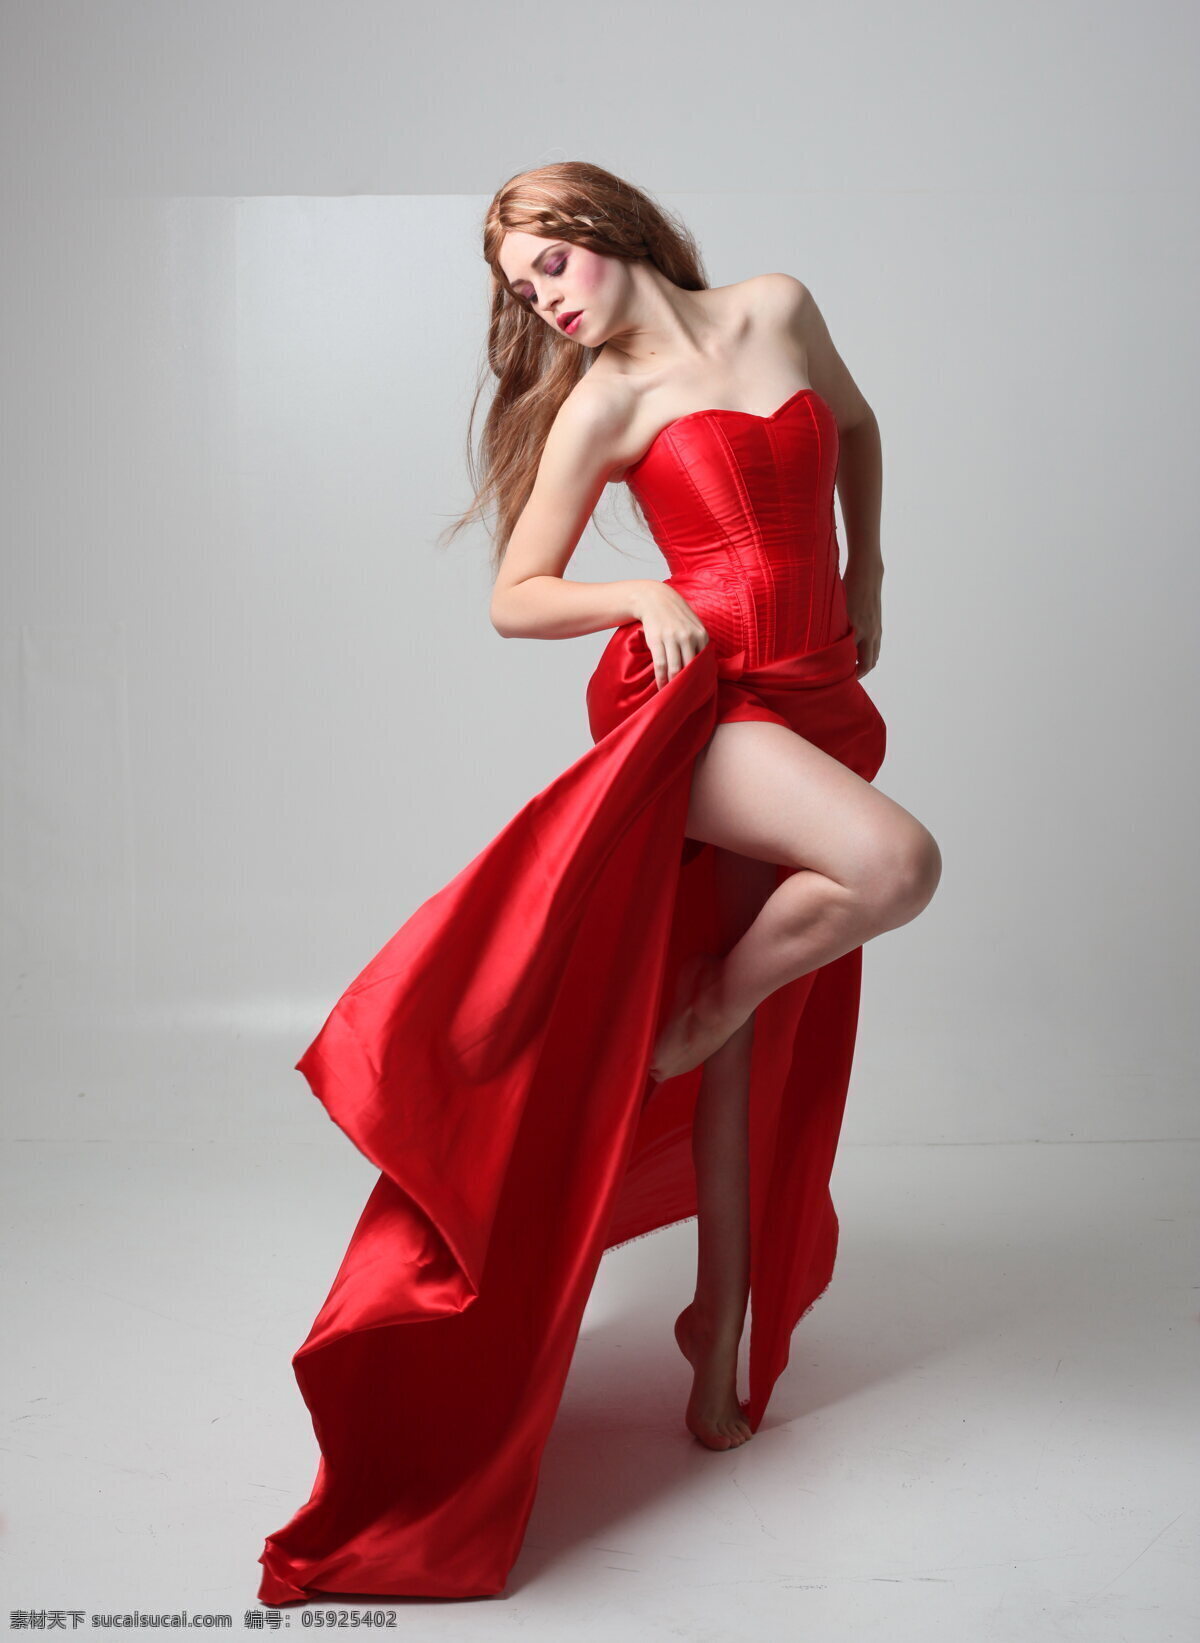 喜庆 红色 礼服 美女 高清 性感美女图片 红色礼服 红裙 长裙 欧美美女